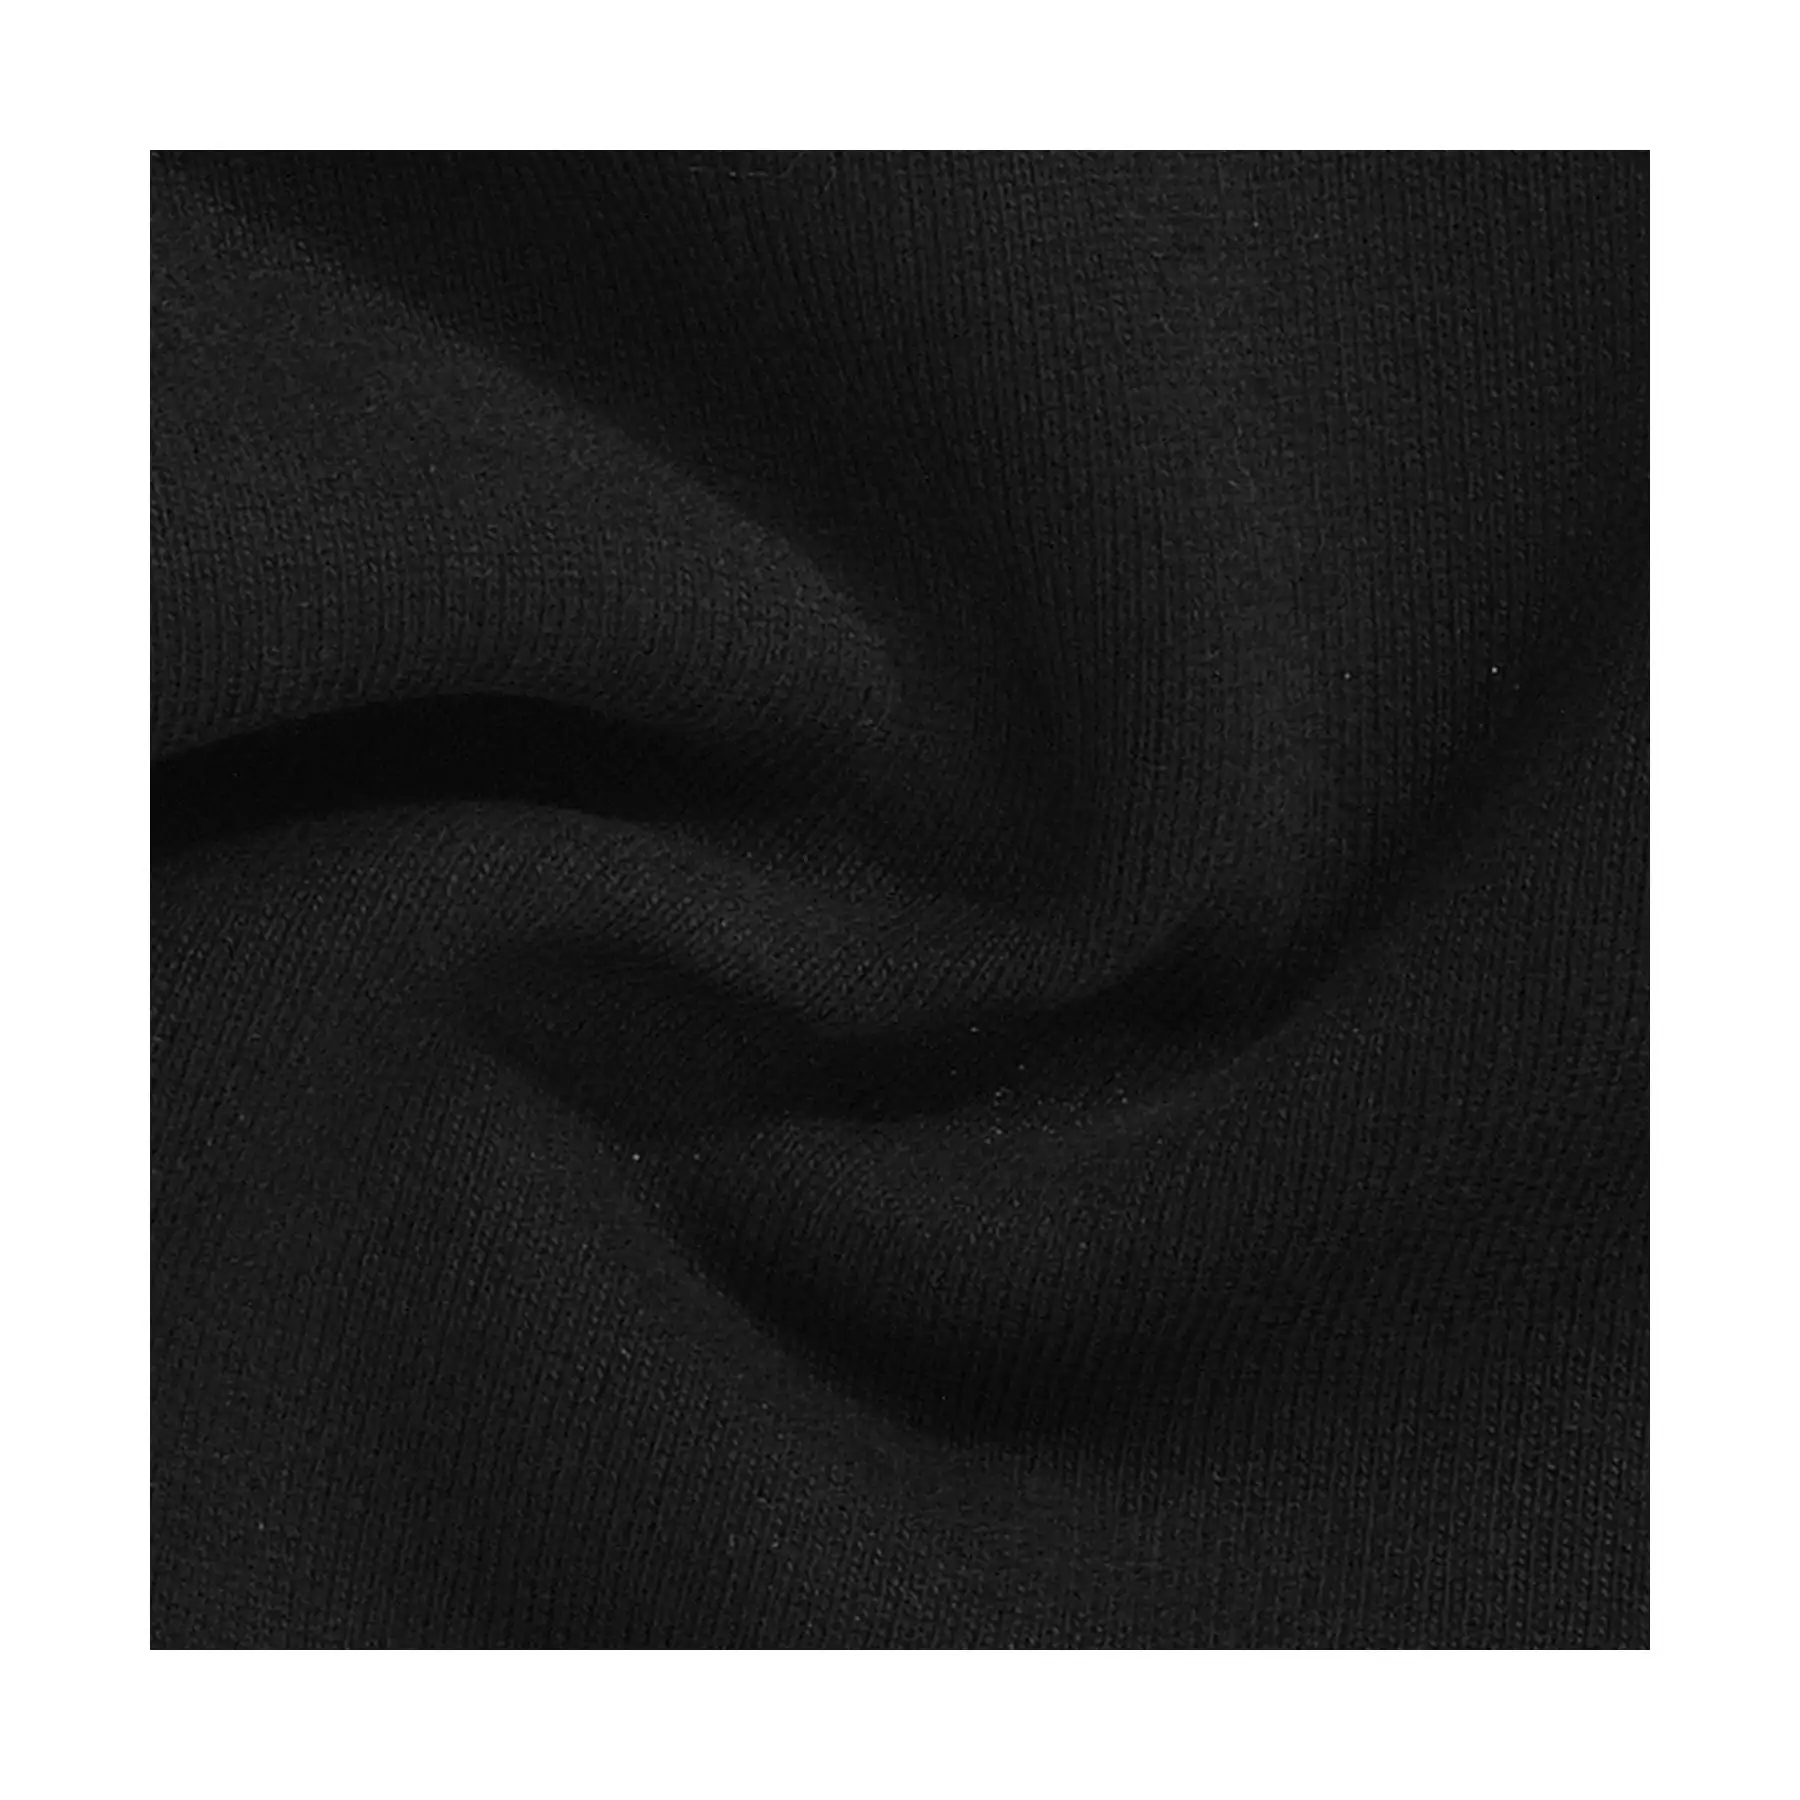 Top Durable Heavy Cotton Sweatshirt-Fabriqué en Italie Épais et chaud pour un confort accru-Must-Have In Casual Wear